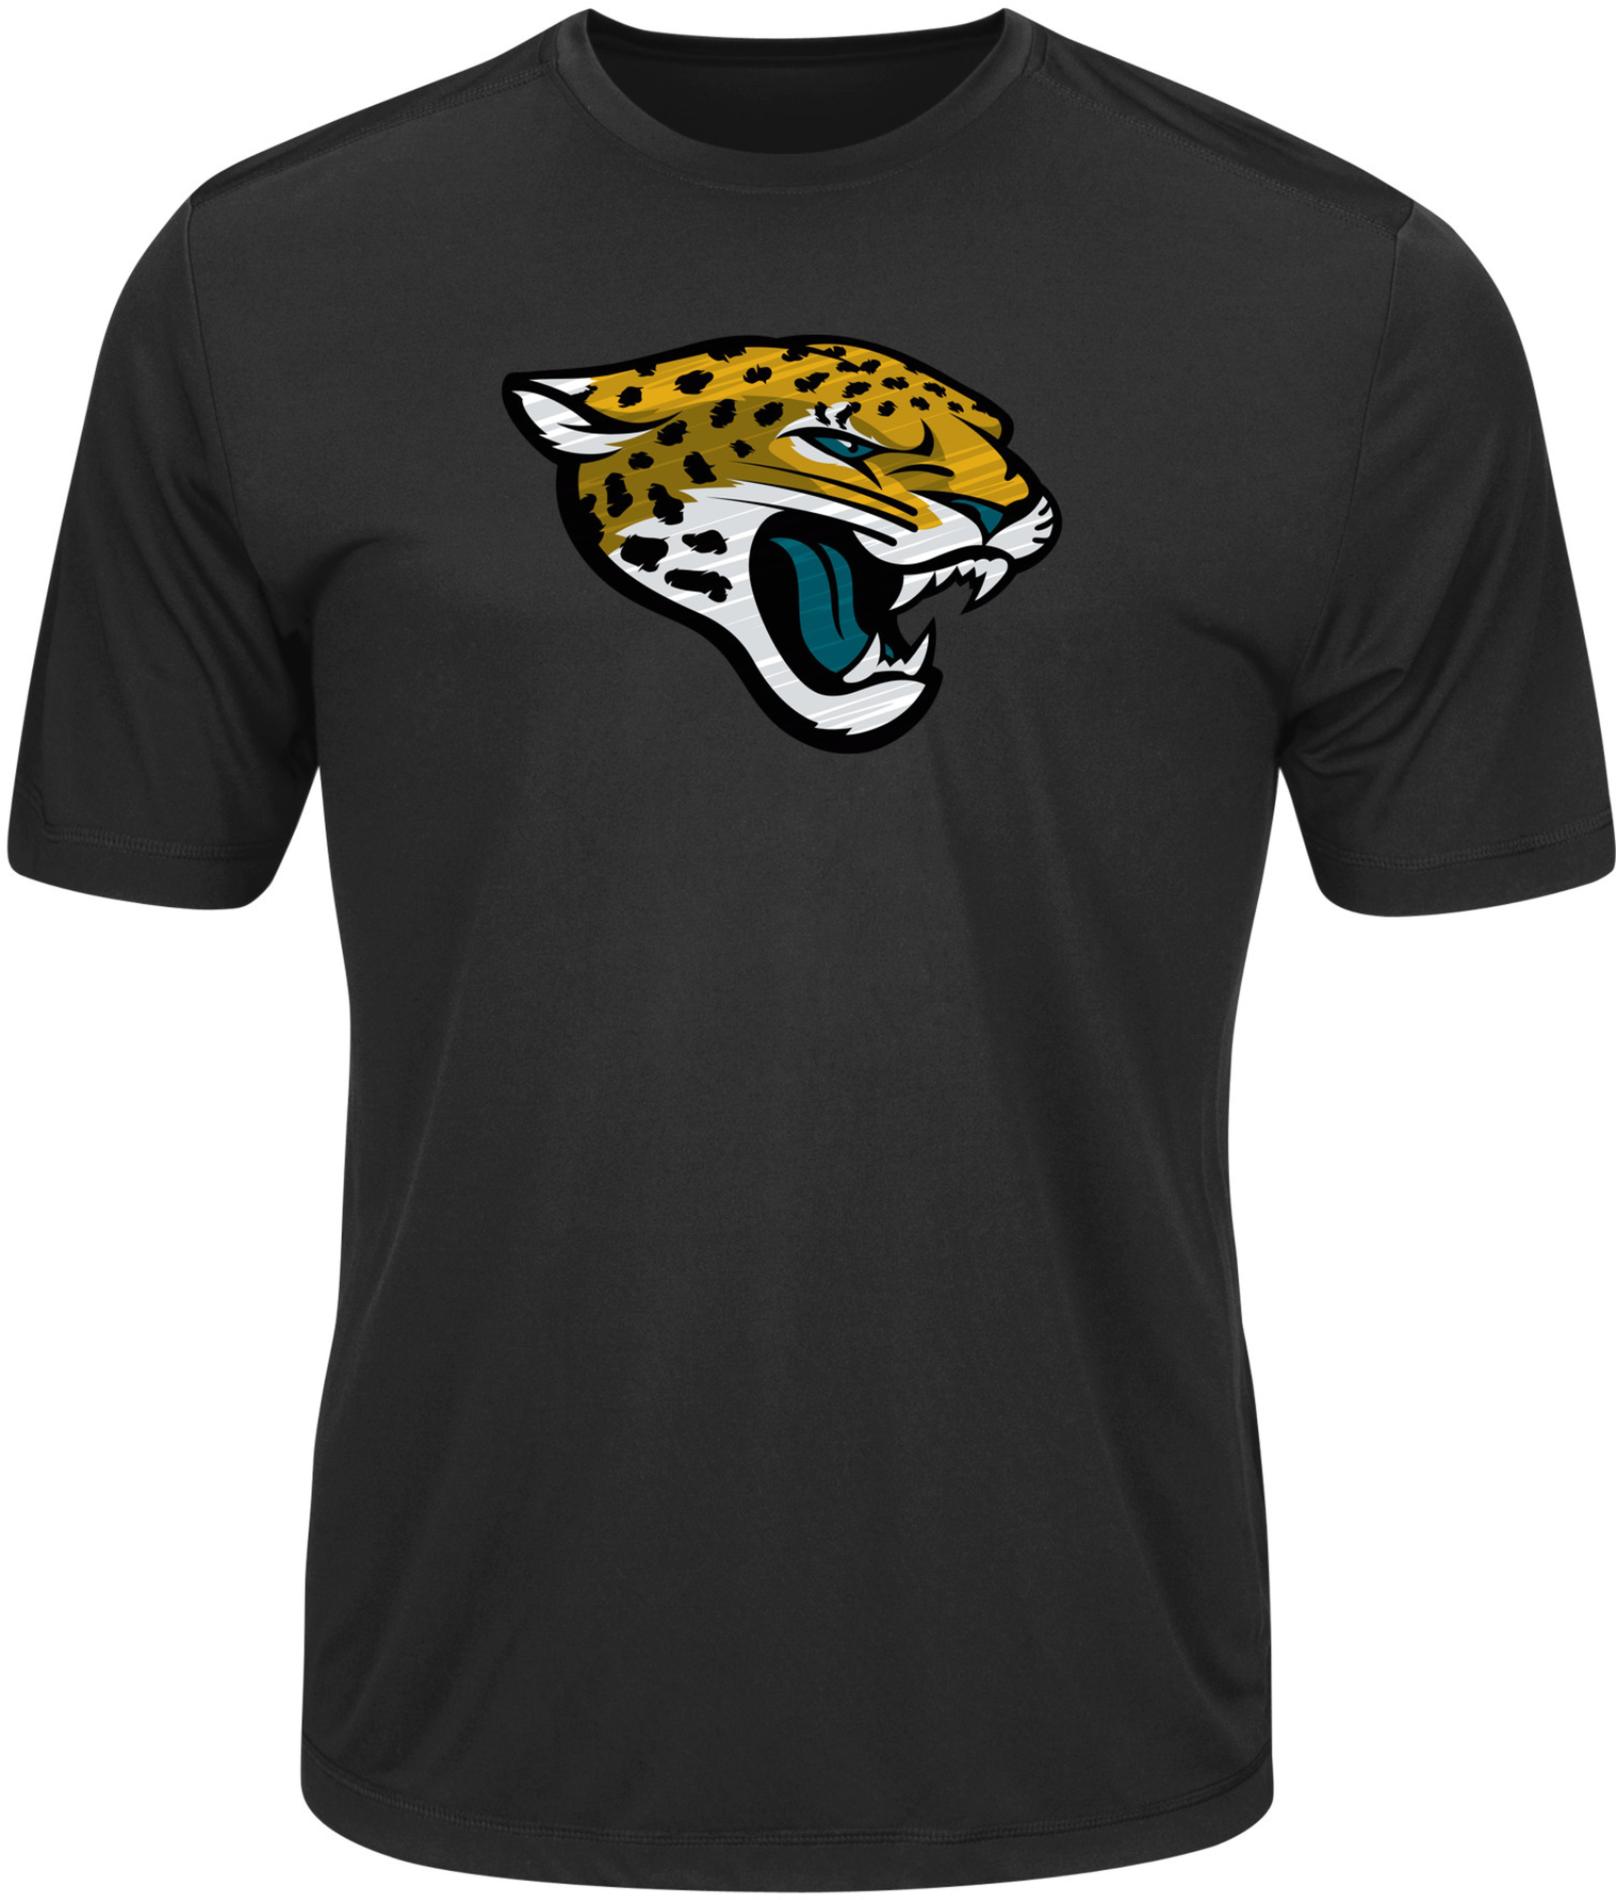 NFL Men's Graphic T-Shirt - Jacksonville Jaguars